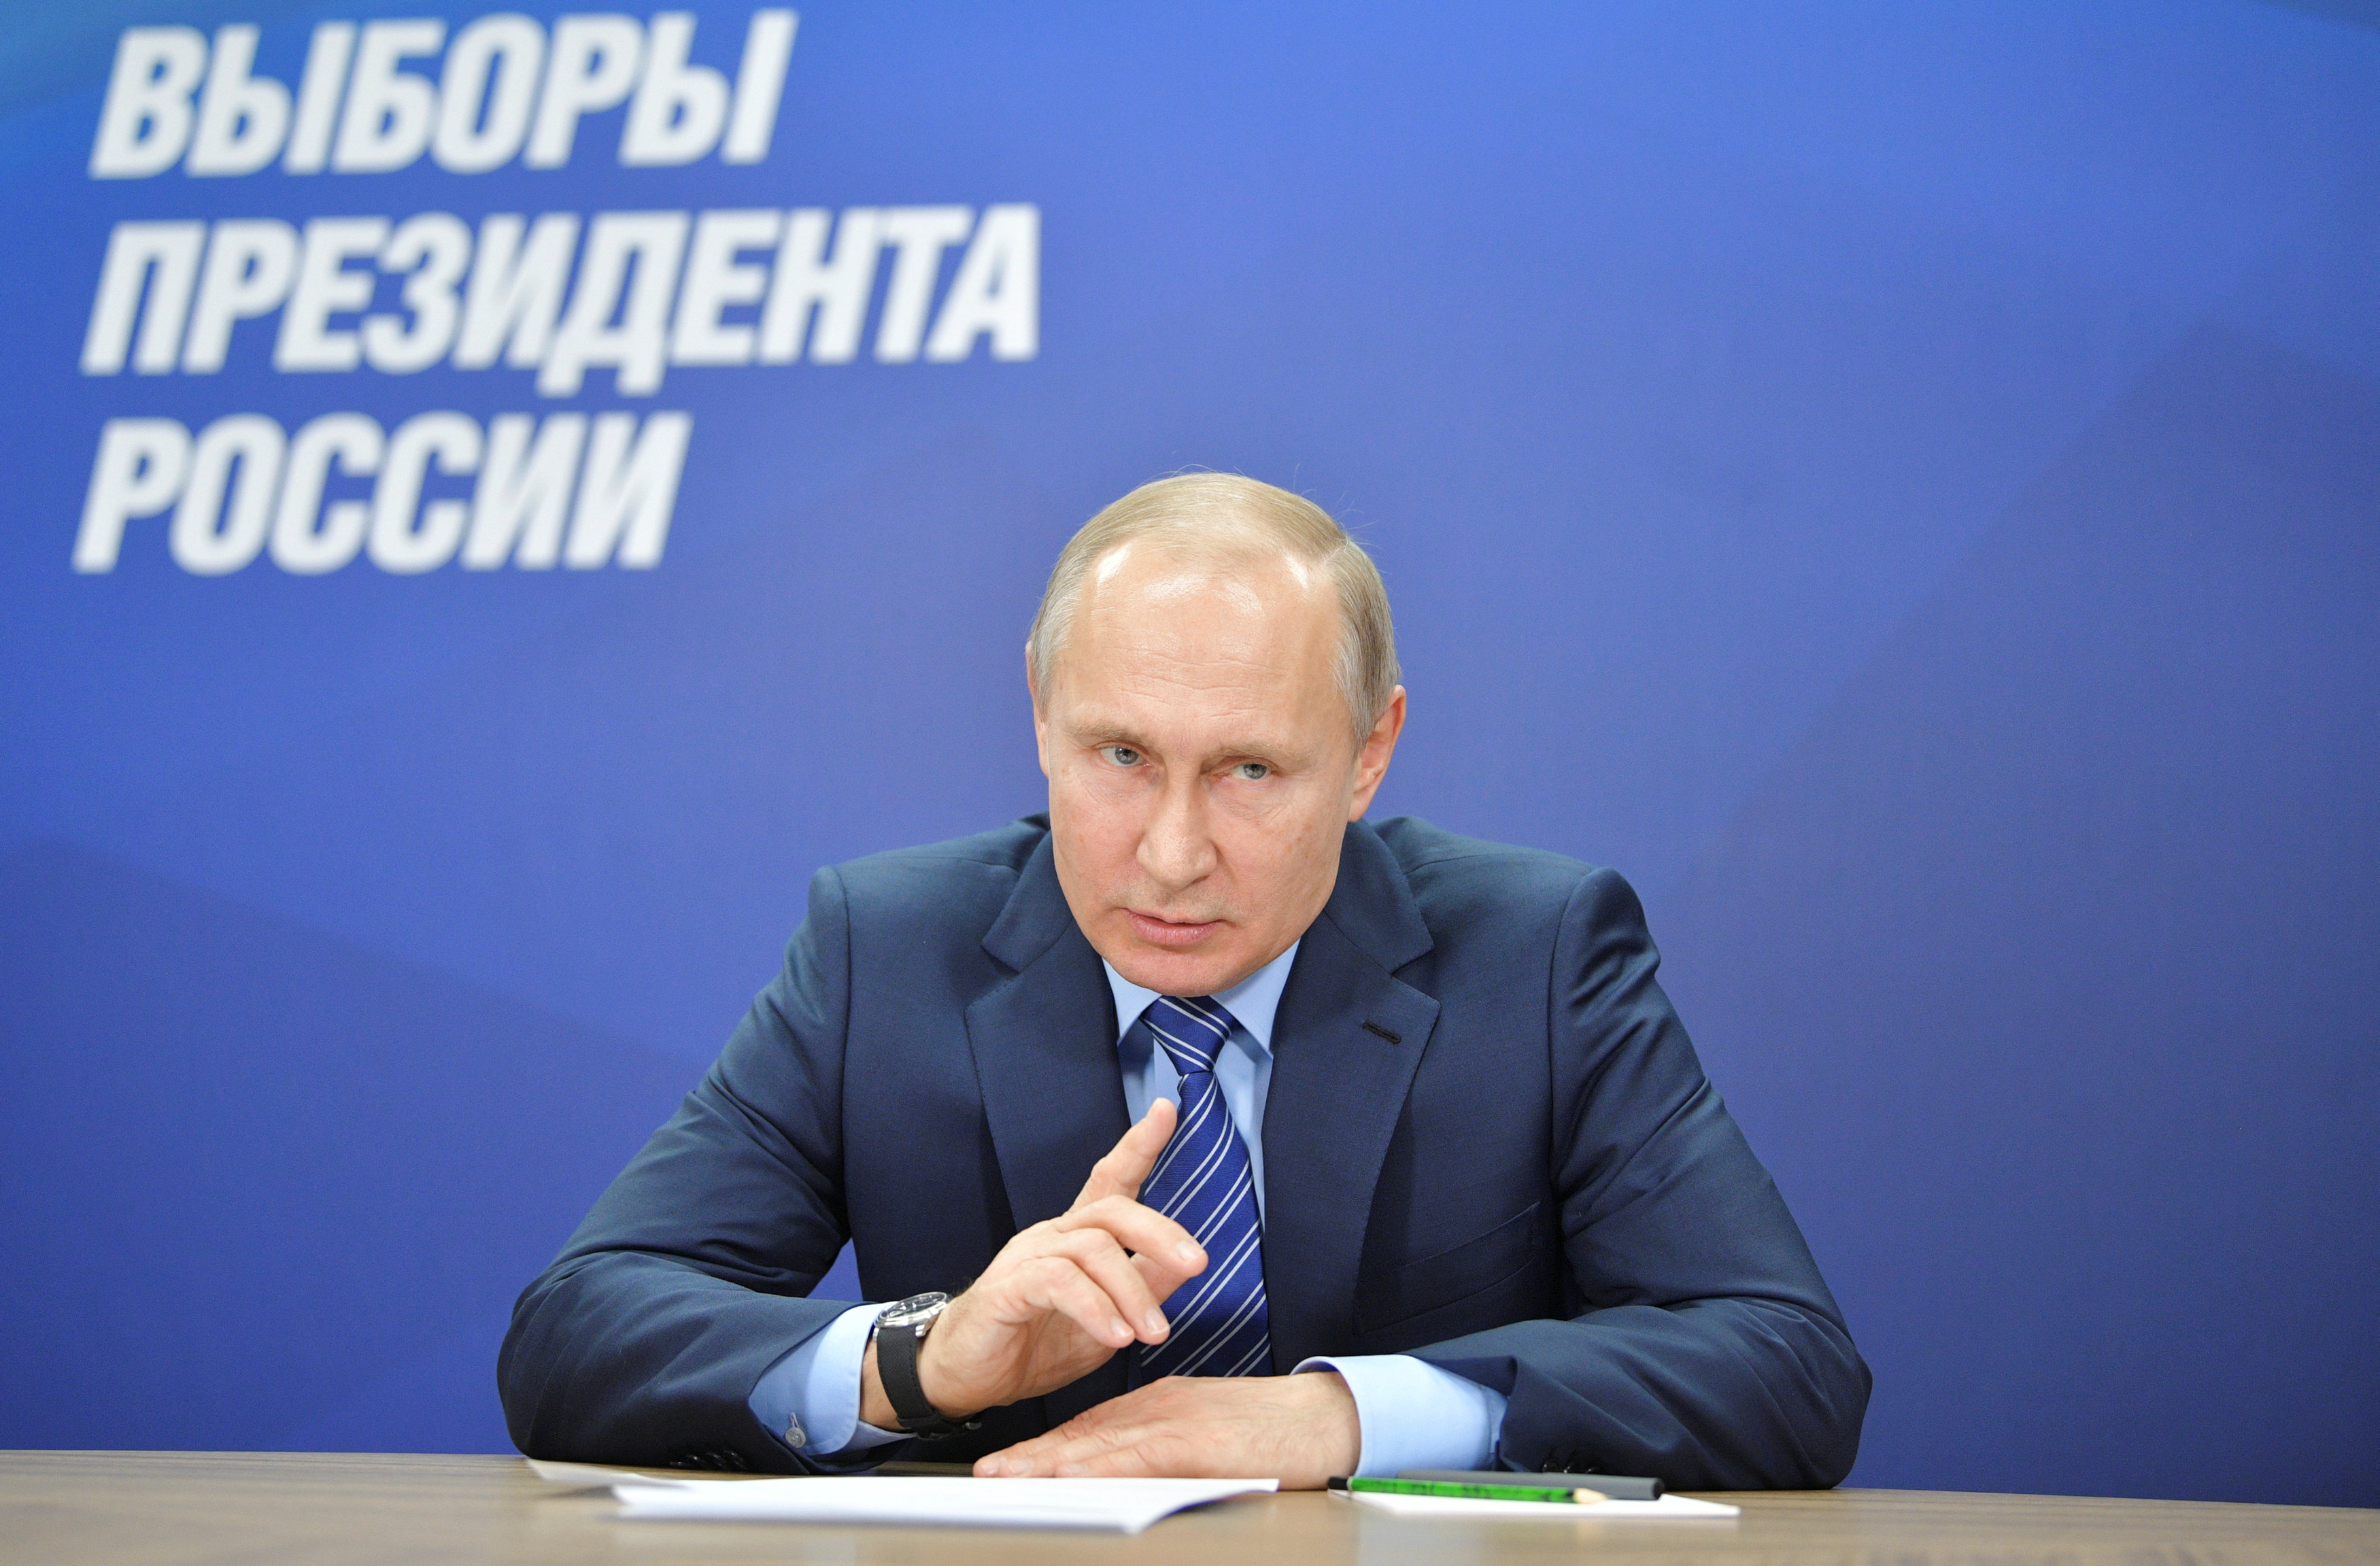 Πούτιν: Υπάρχει ελπίδα να εξομαλυνθούν οι σχέσεις με ΗΠΑ